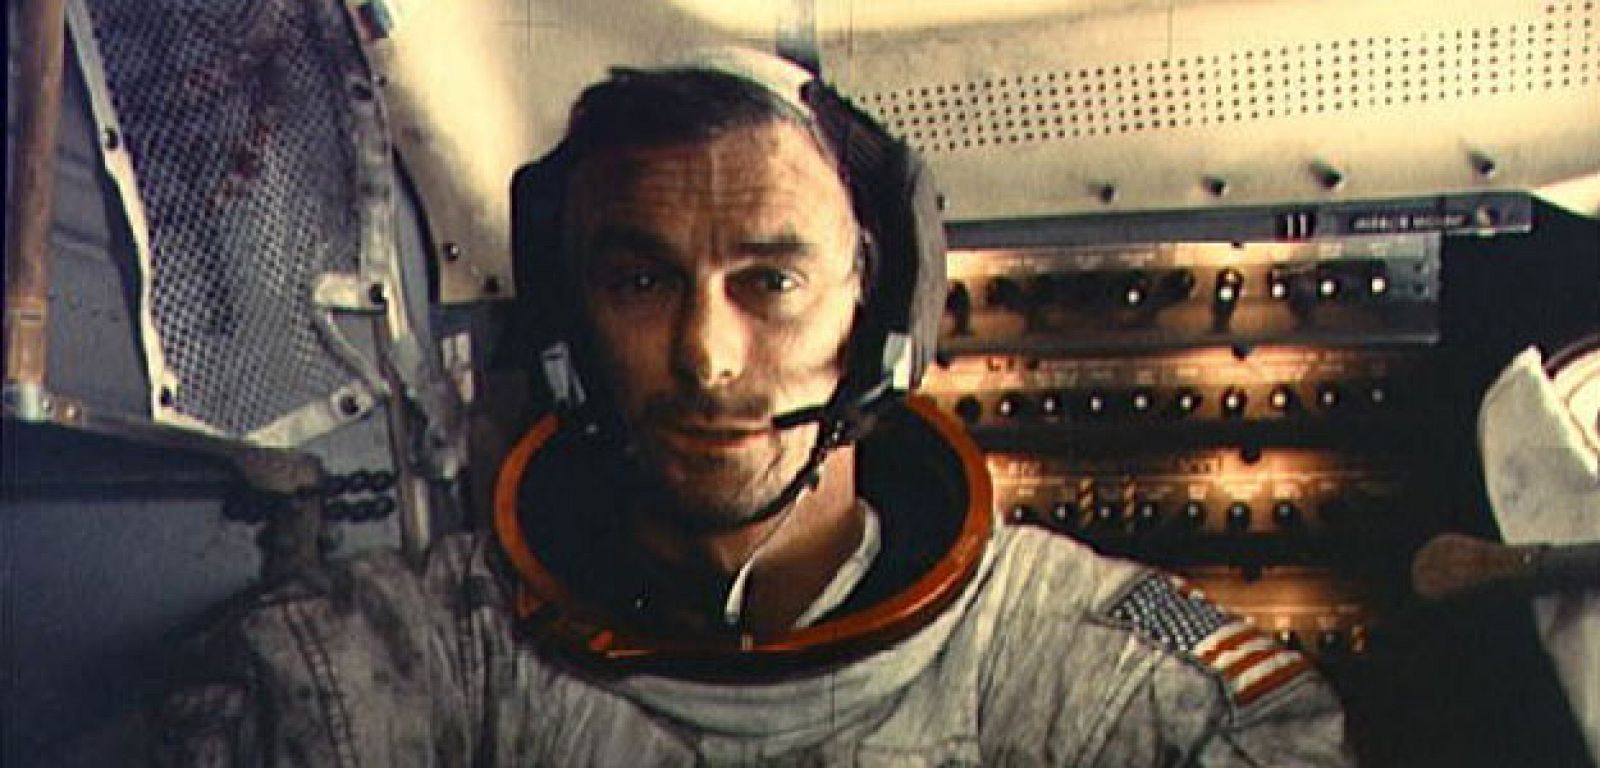 Eugene Cernan, comandante del Apolo XVII dentro del módulo lunar. Viajó a la aLuna en Dos ocasiones